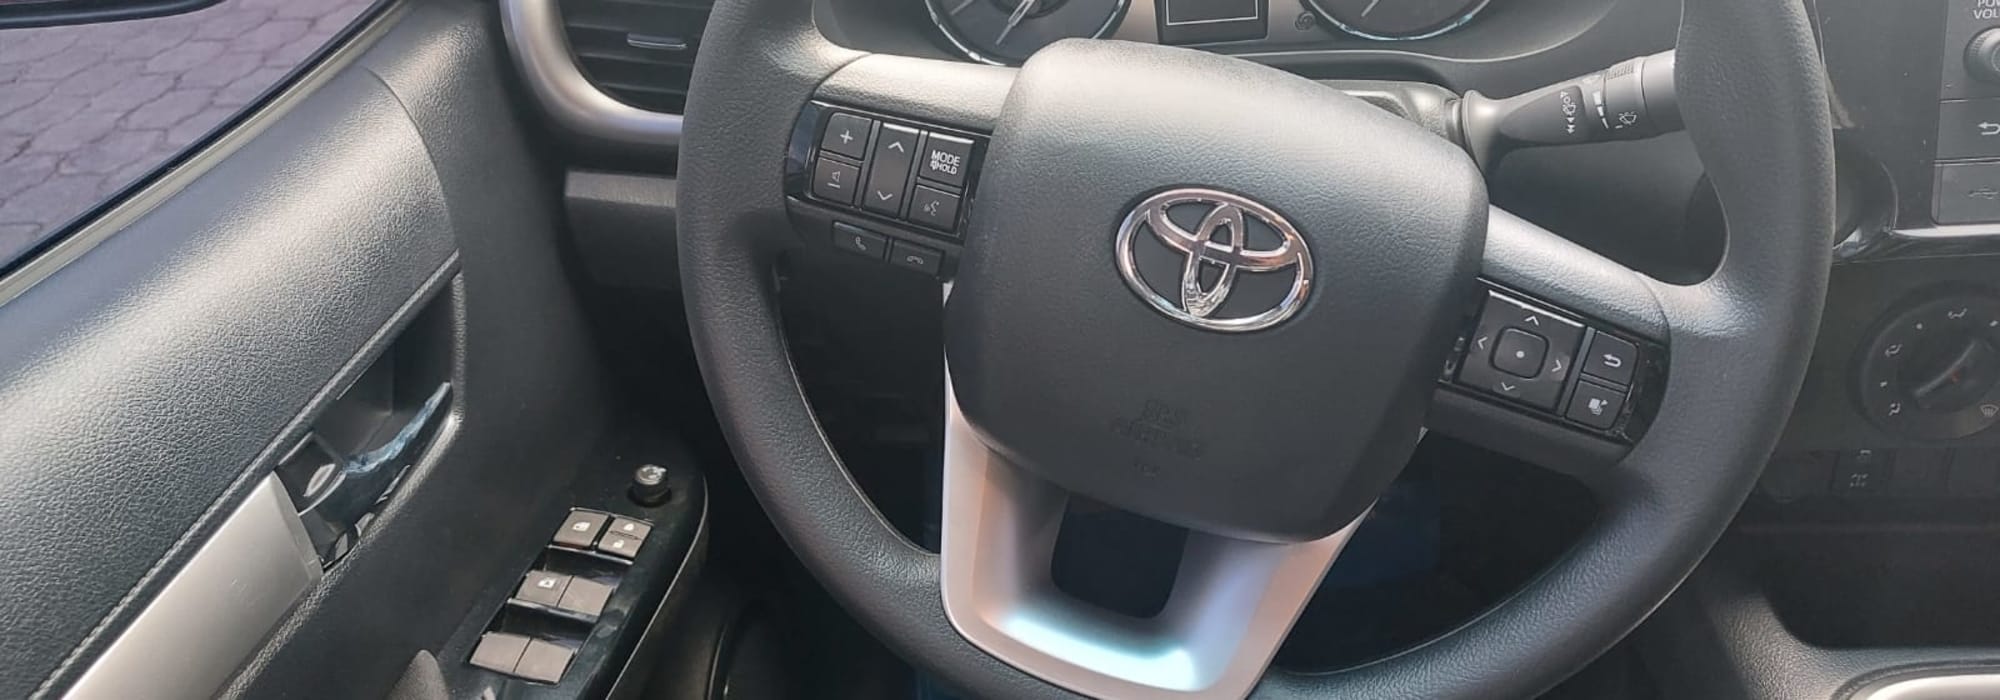 Toyota Hilux de 